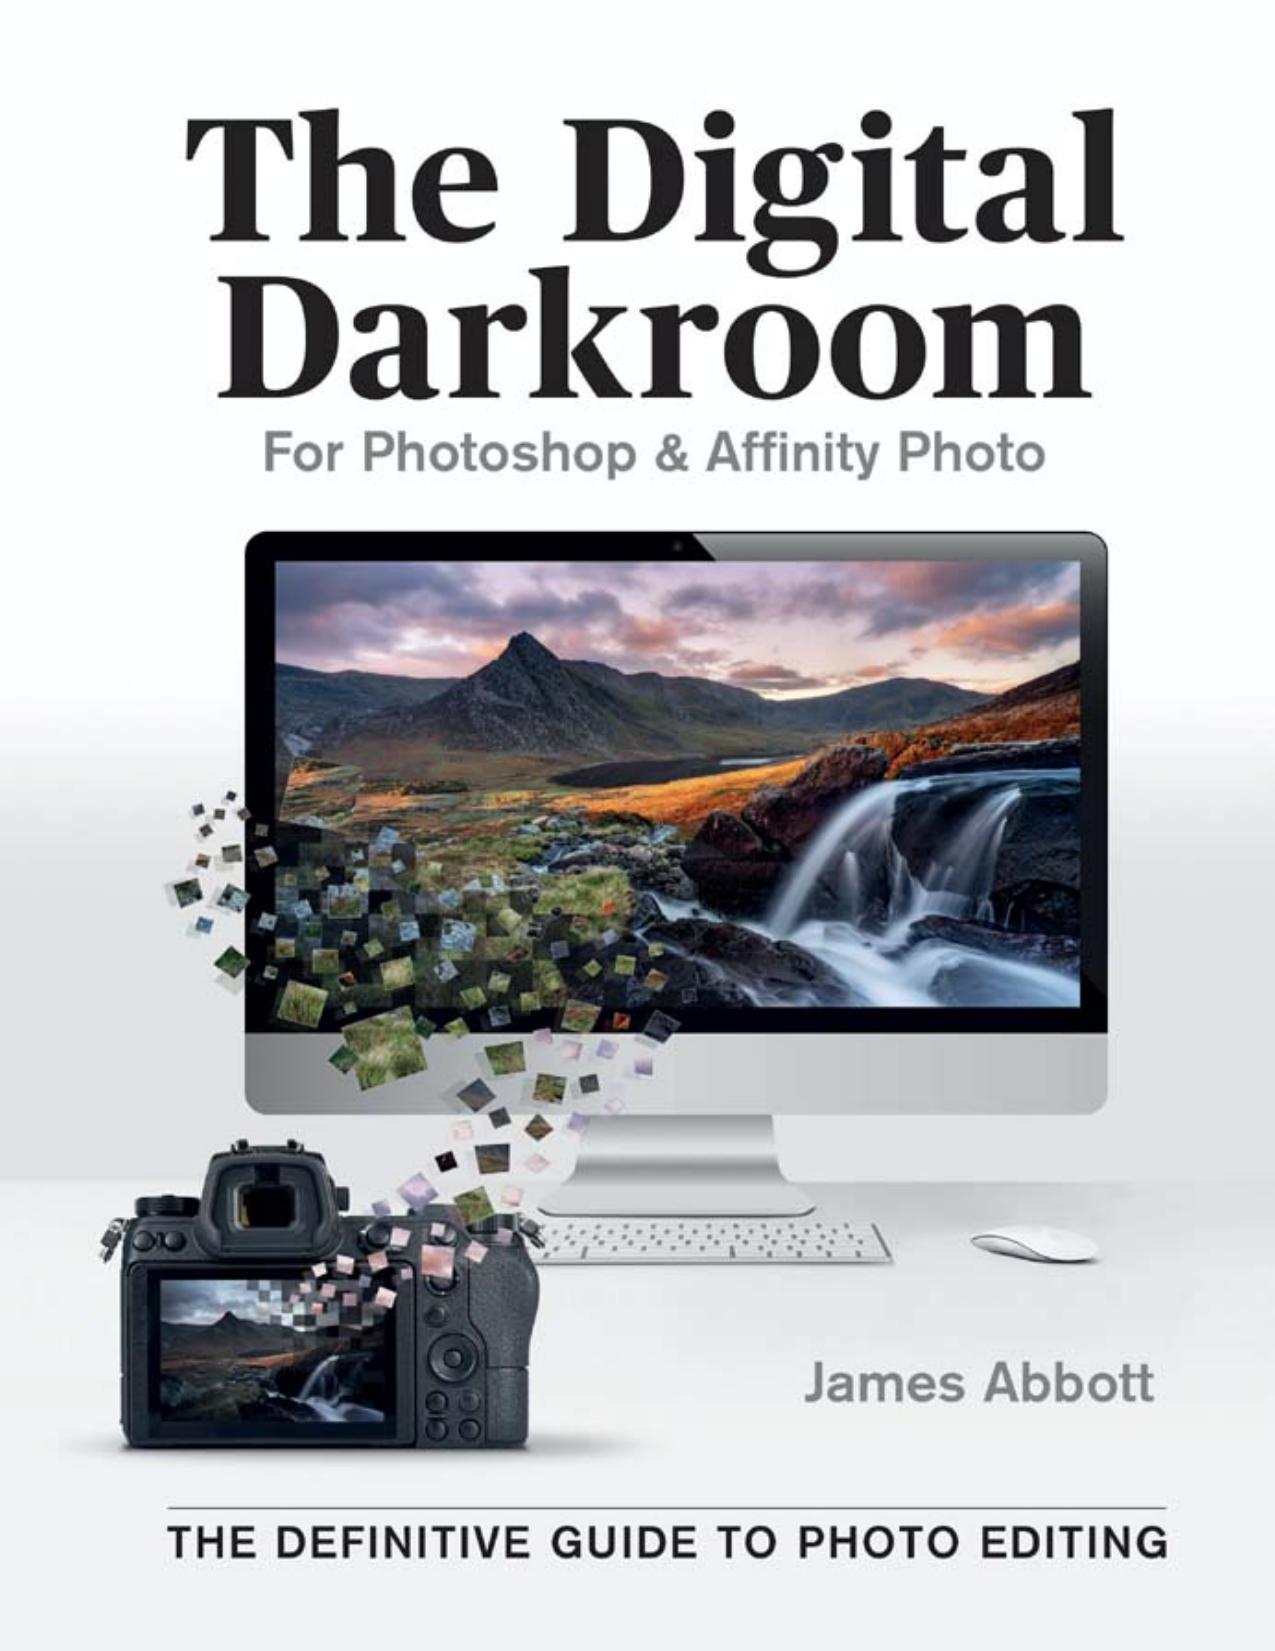 The Digital Darkroom by James Abbott